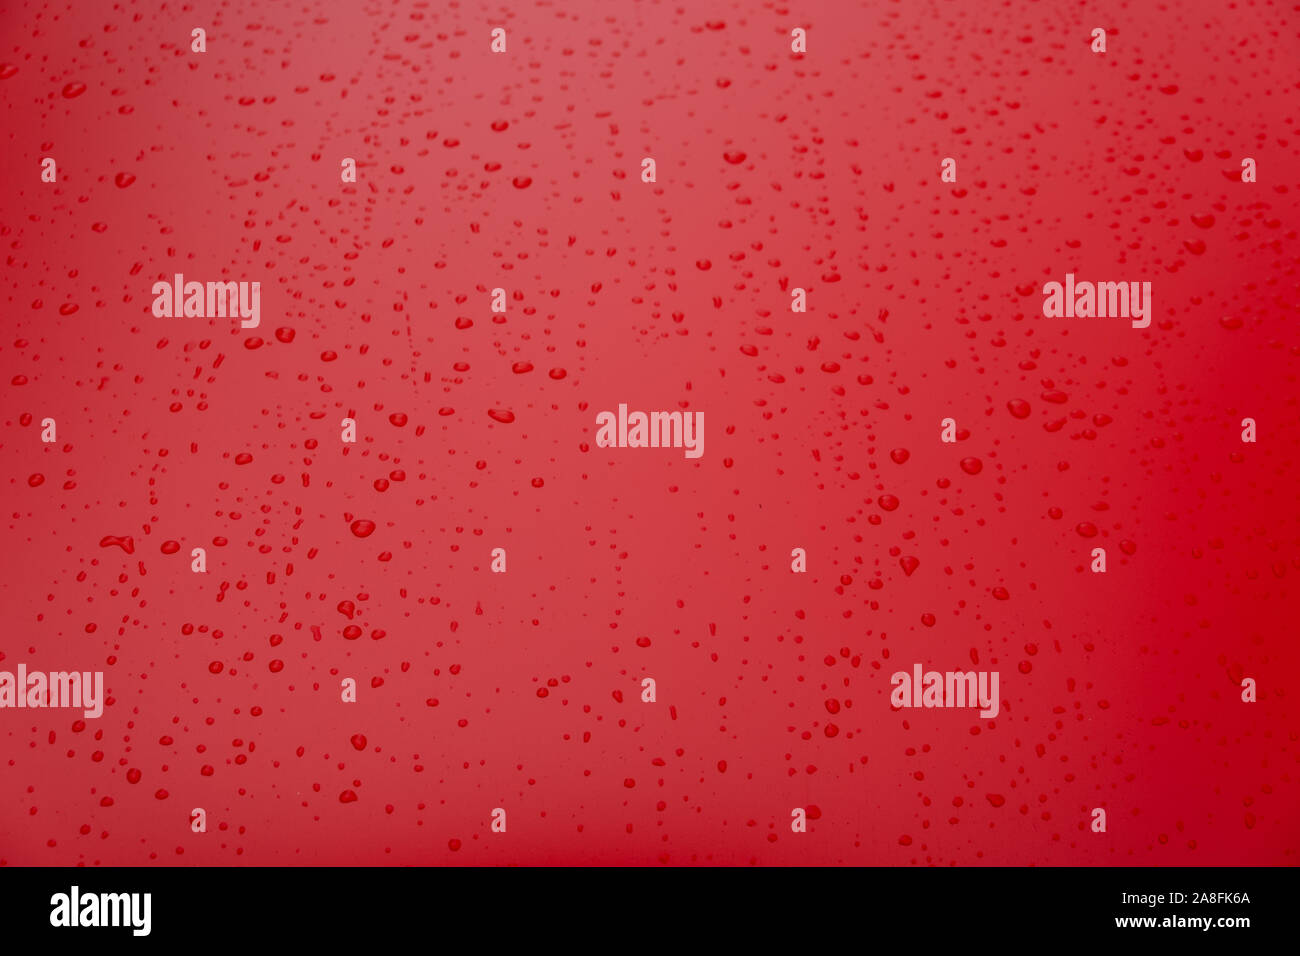 Zusammenfassung Hintergrund rot mit Regentropfen Stockfoto